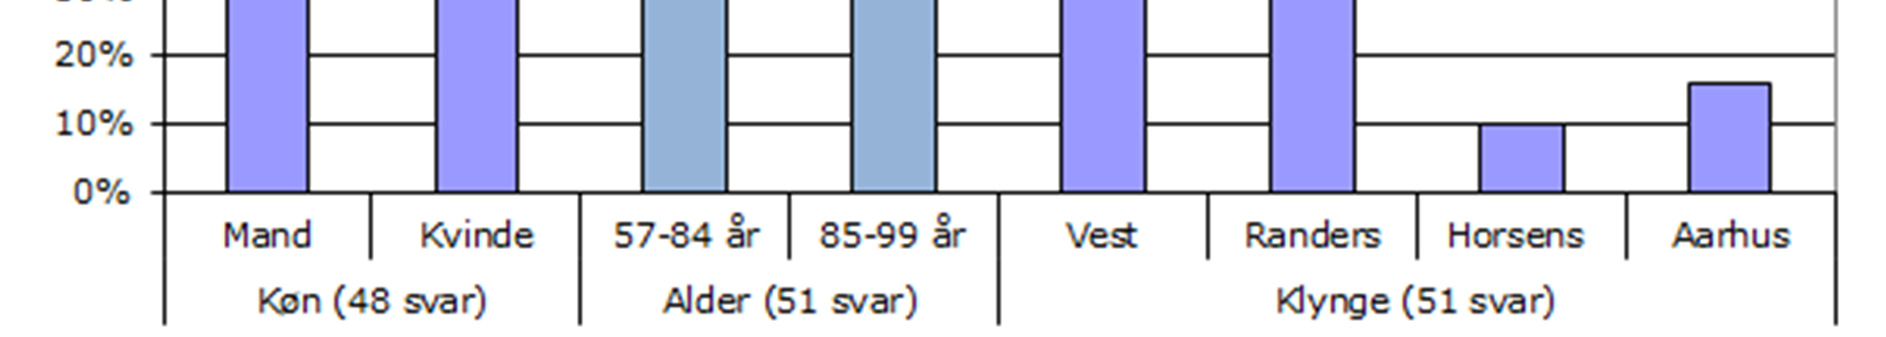 er under 65 år. Klyngemæssigt er de 51 indkomne spørgeskemaer fordelt med flest i Vest, der har 23 skemaer, Randers har 15, Aarhus har 8 og Horsens har 5.